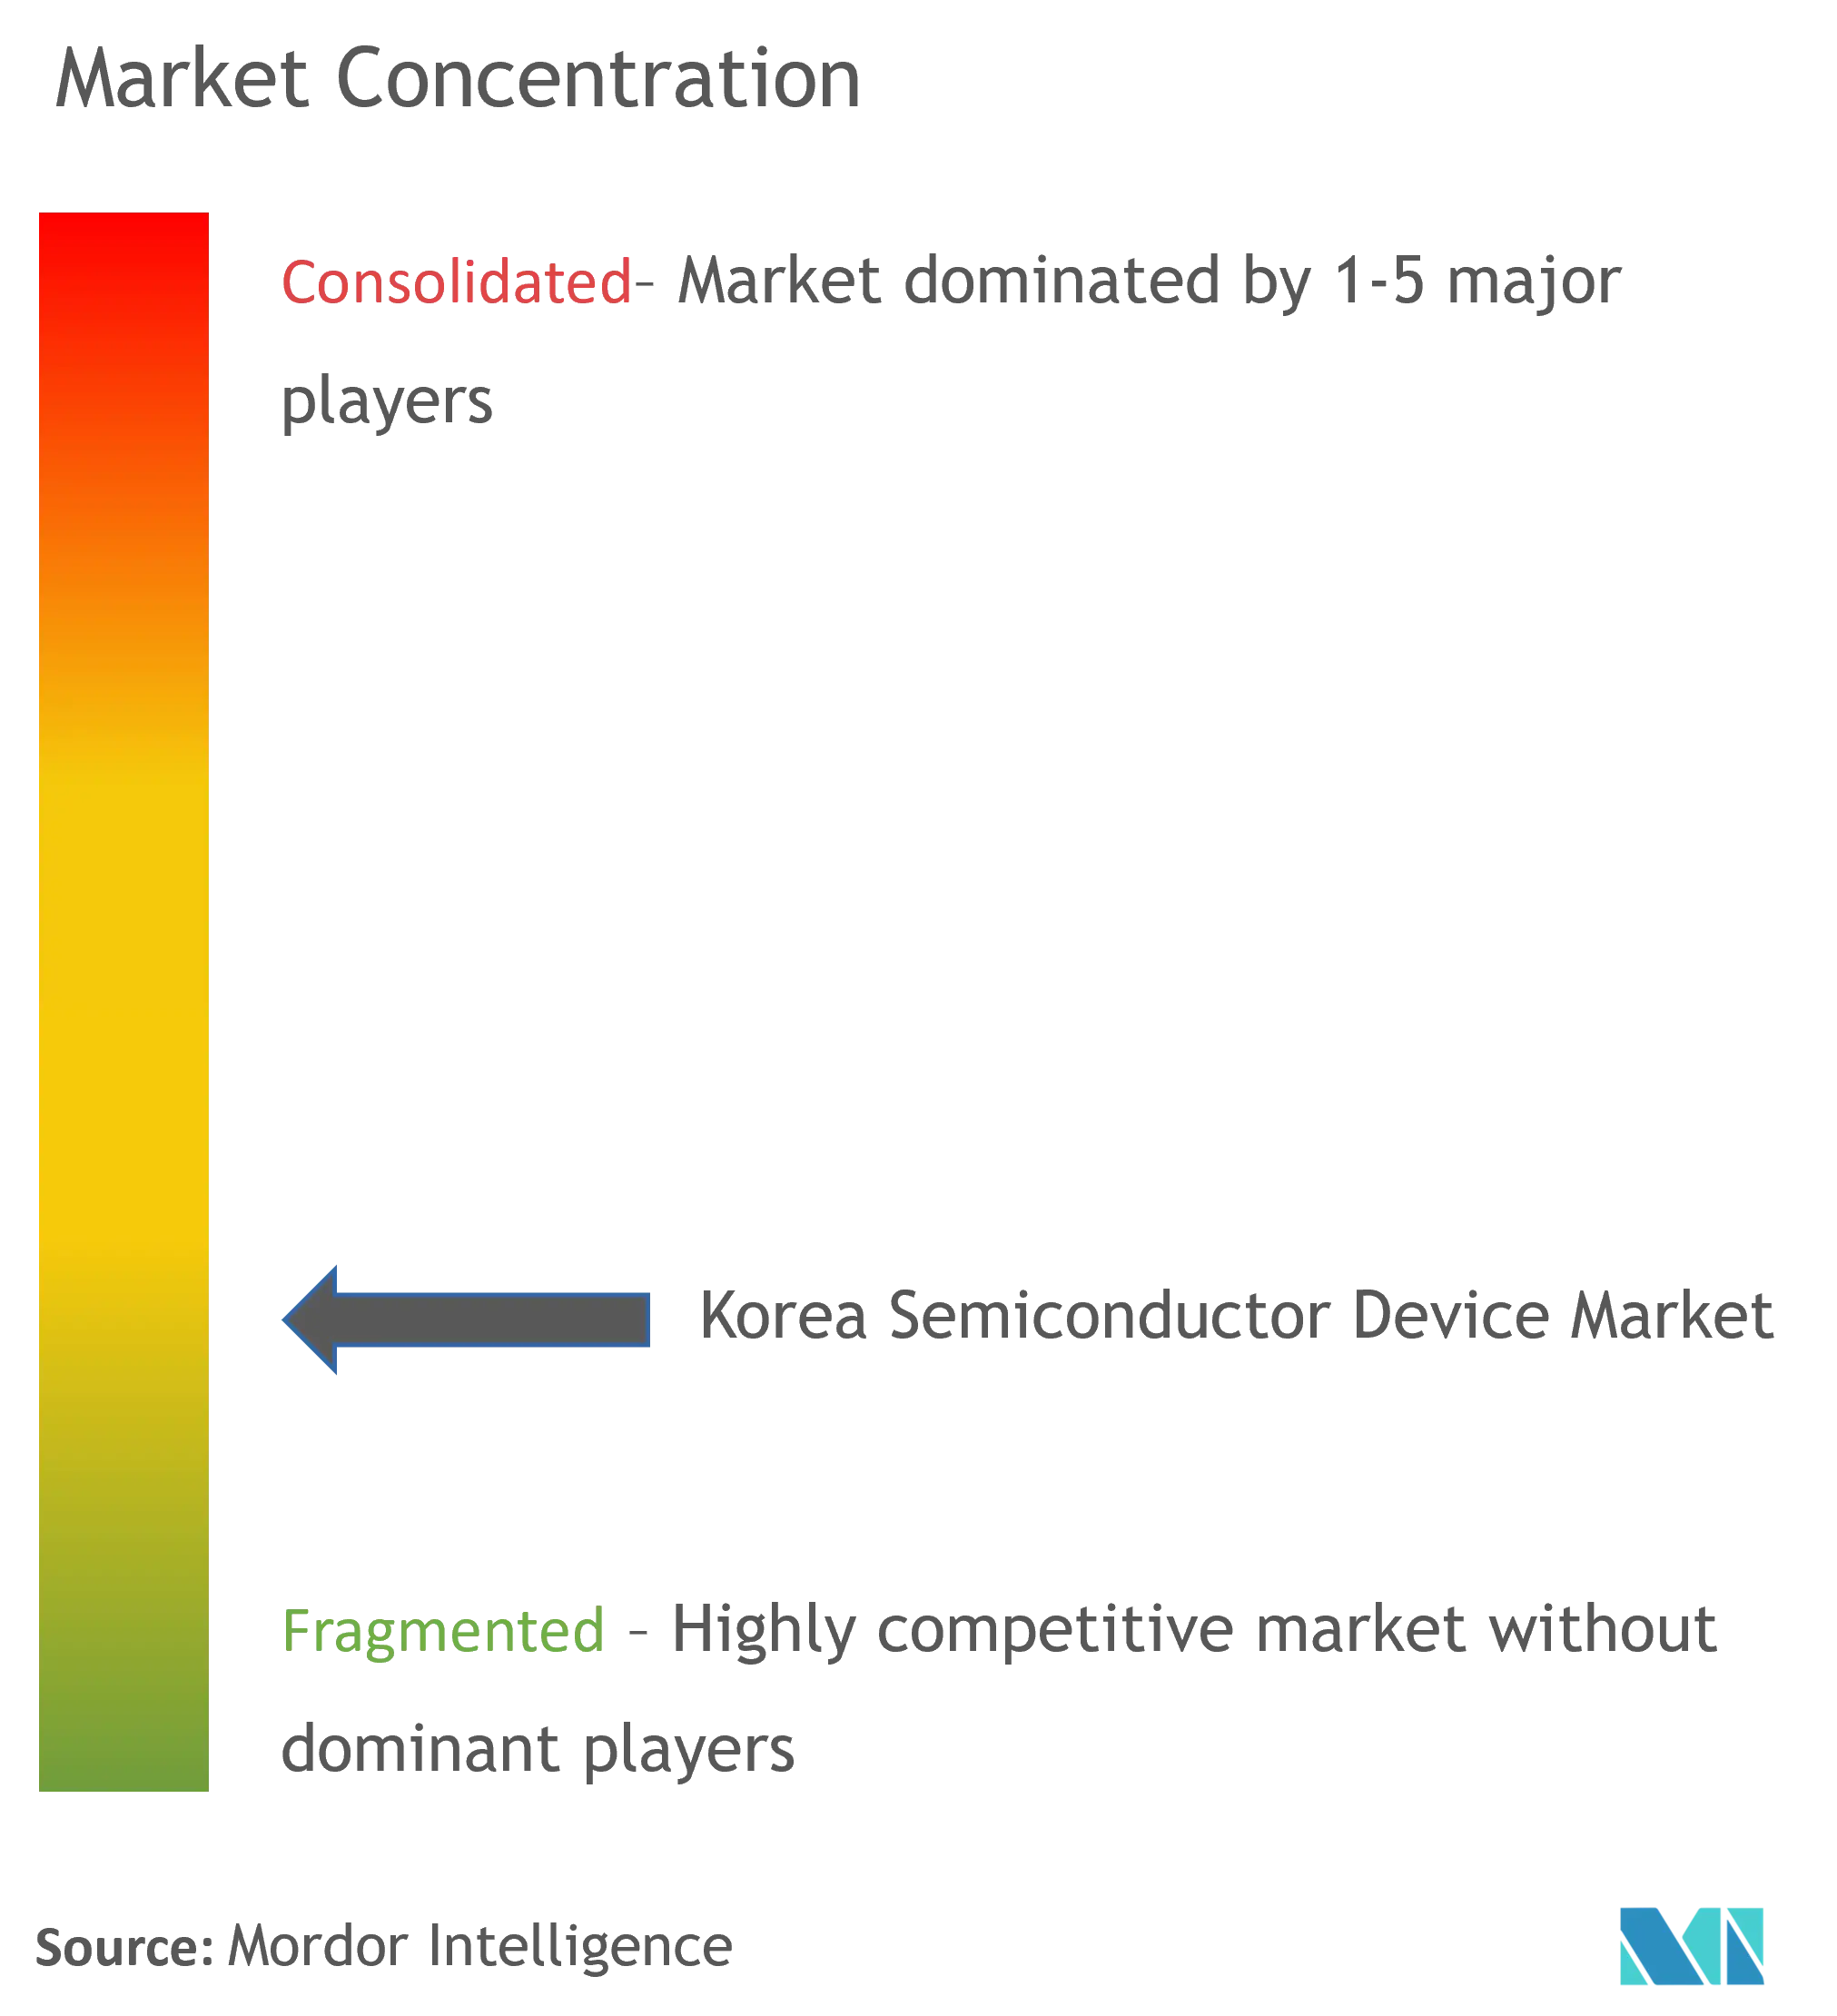 韓国半導体デバイス市場の集中度